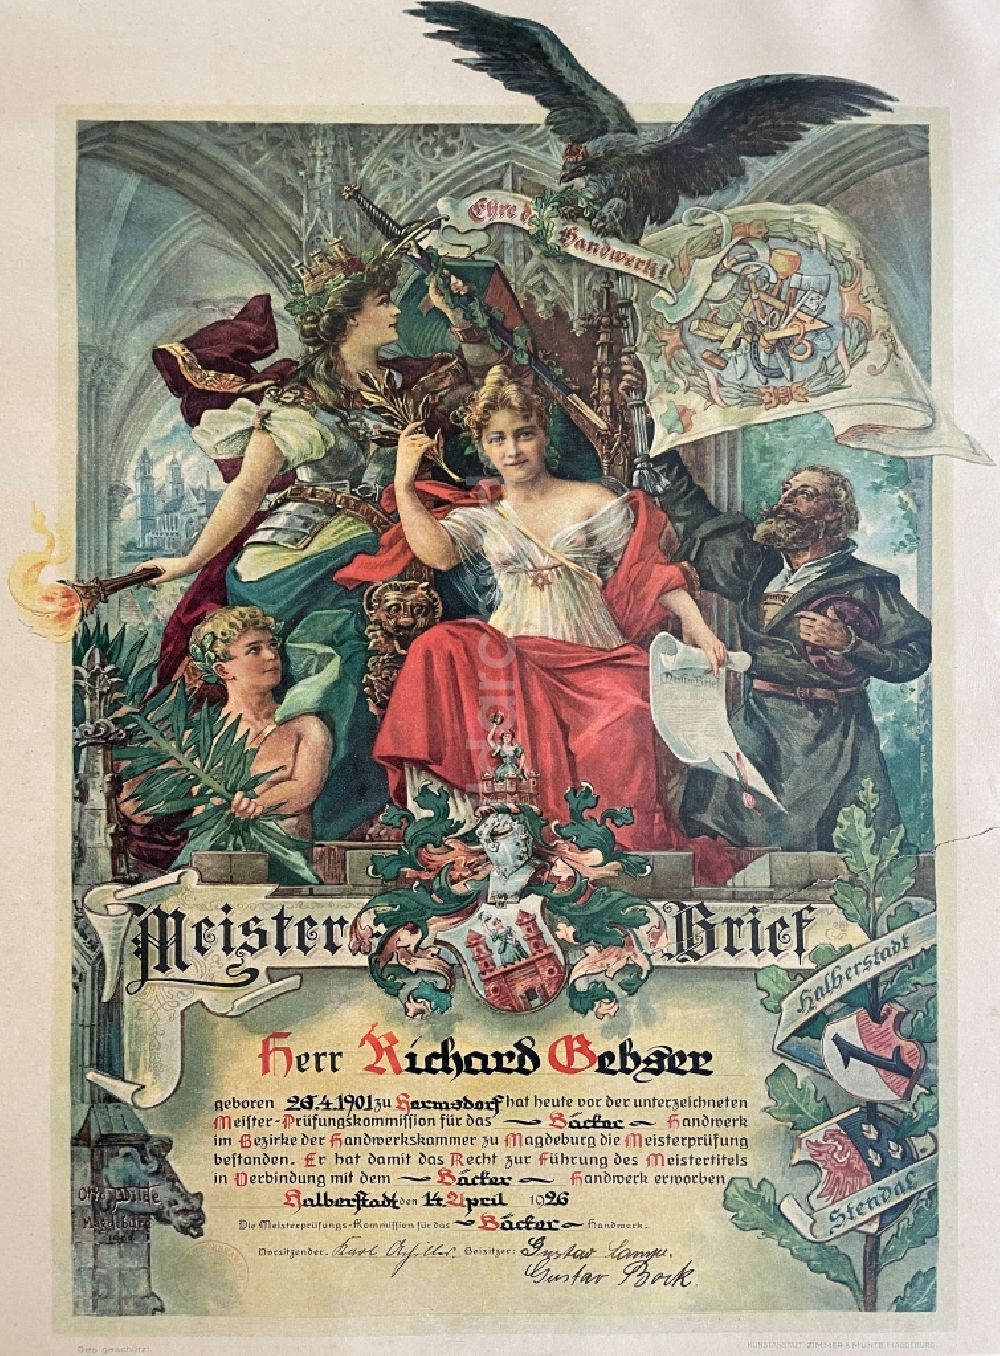 Halberstadt: Bäckerhandwerks - Meisterbrief ausgestellt in Halberstadt in Sachsen-Anhalt in Deutschland